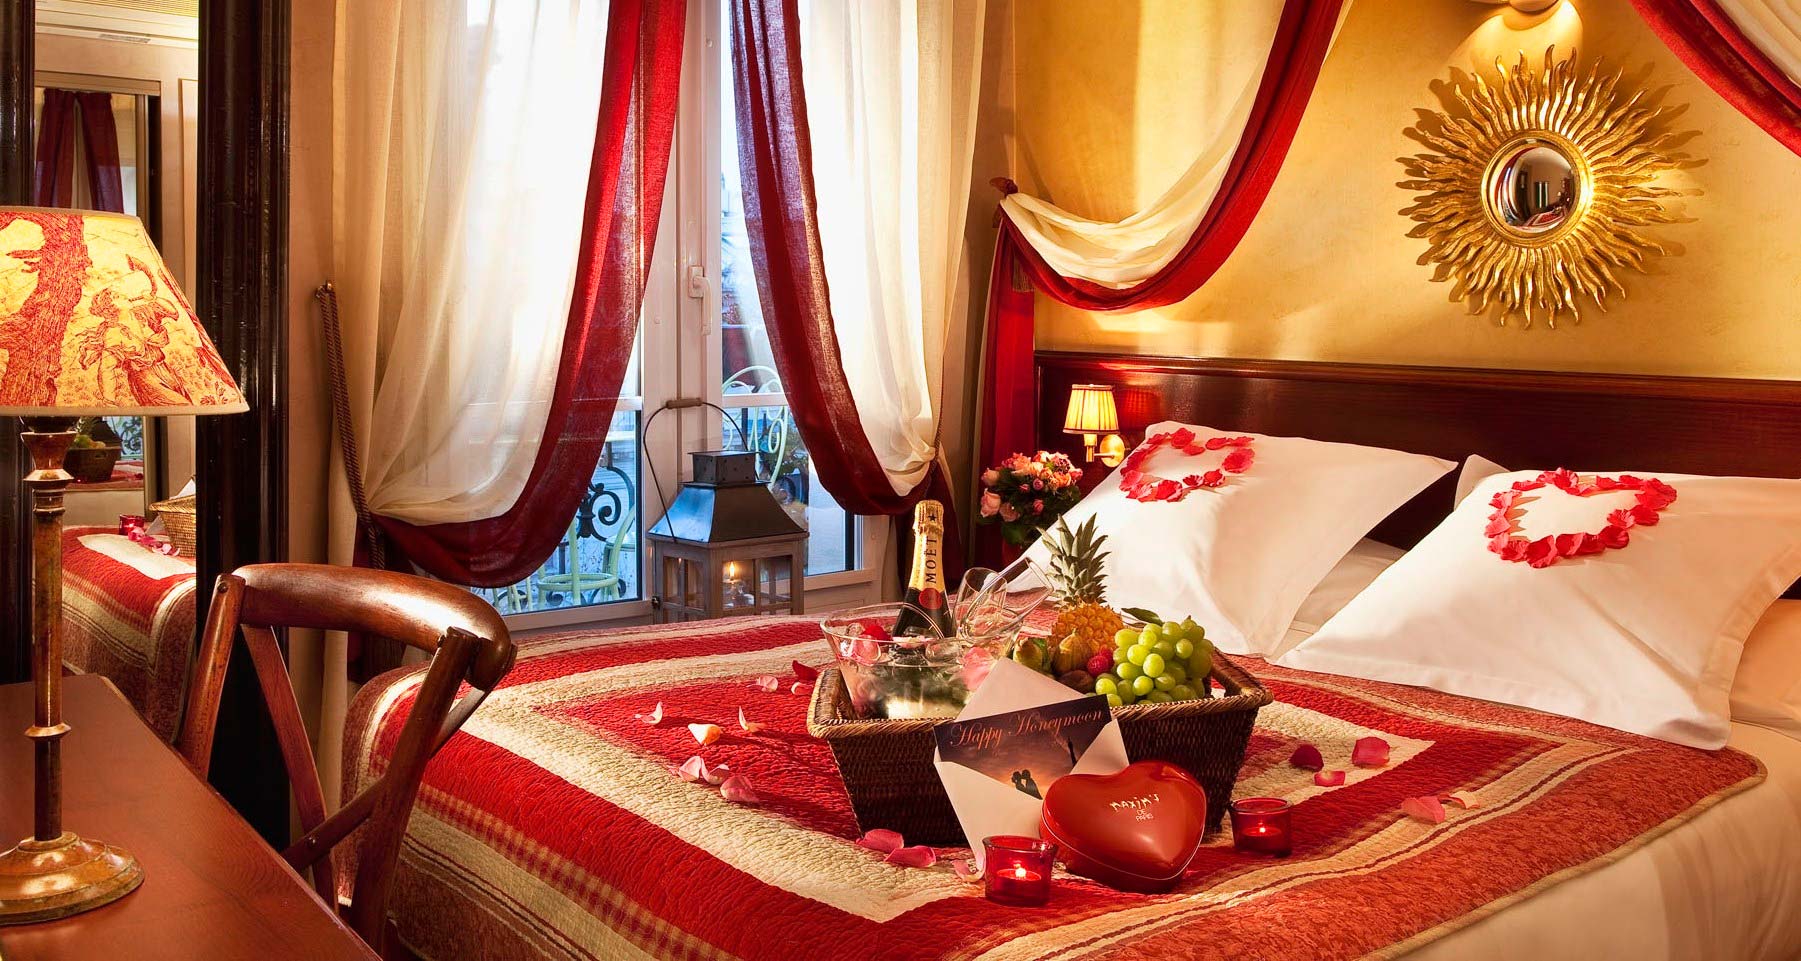 صور ديكور لافكار رومنسية لتزيين غرف النوم - 3